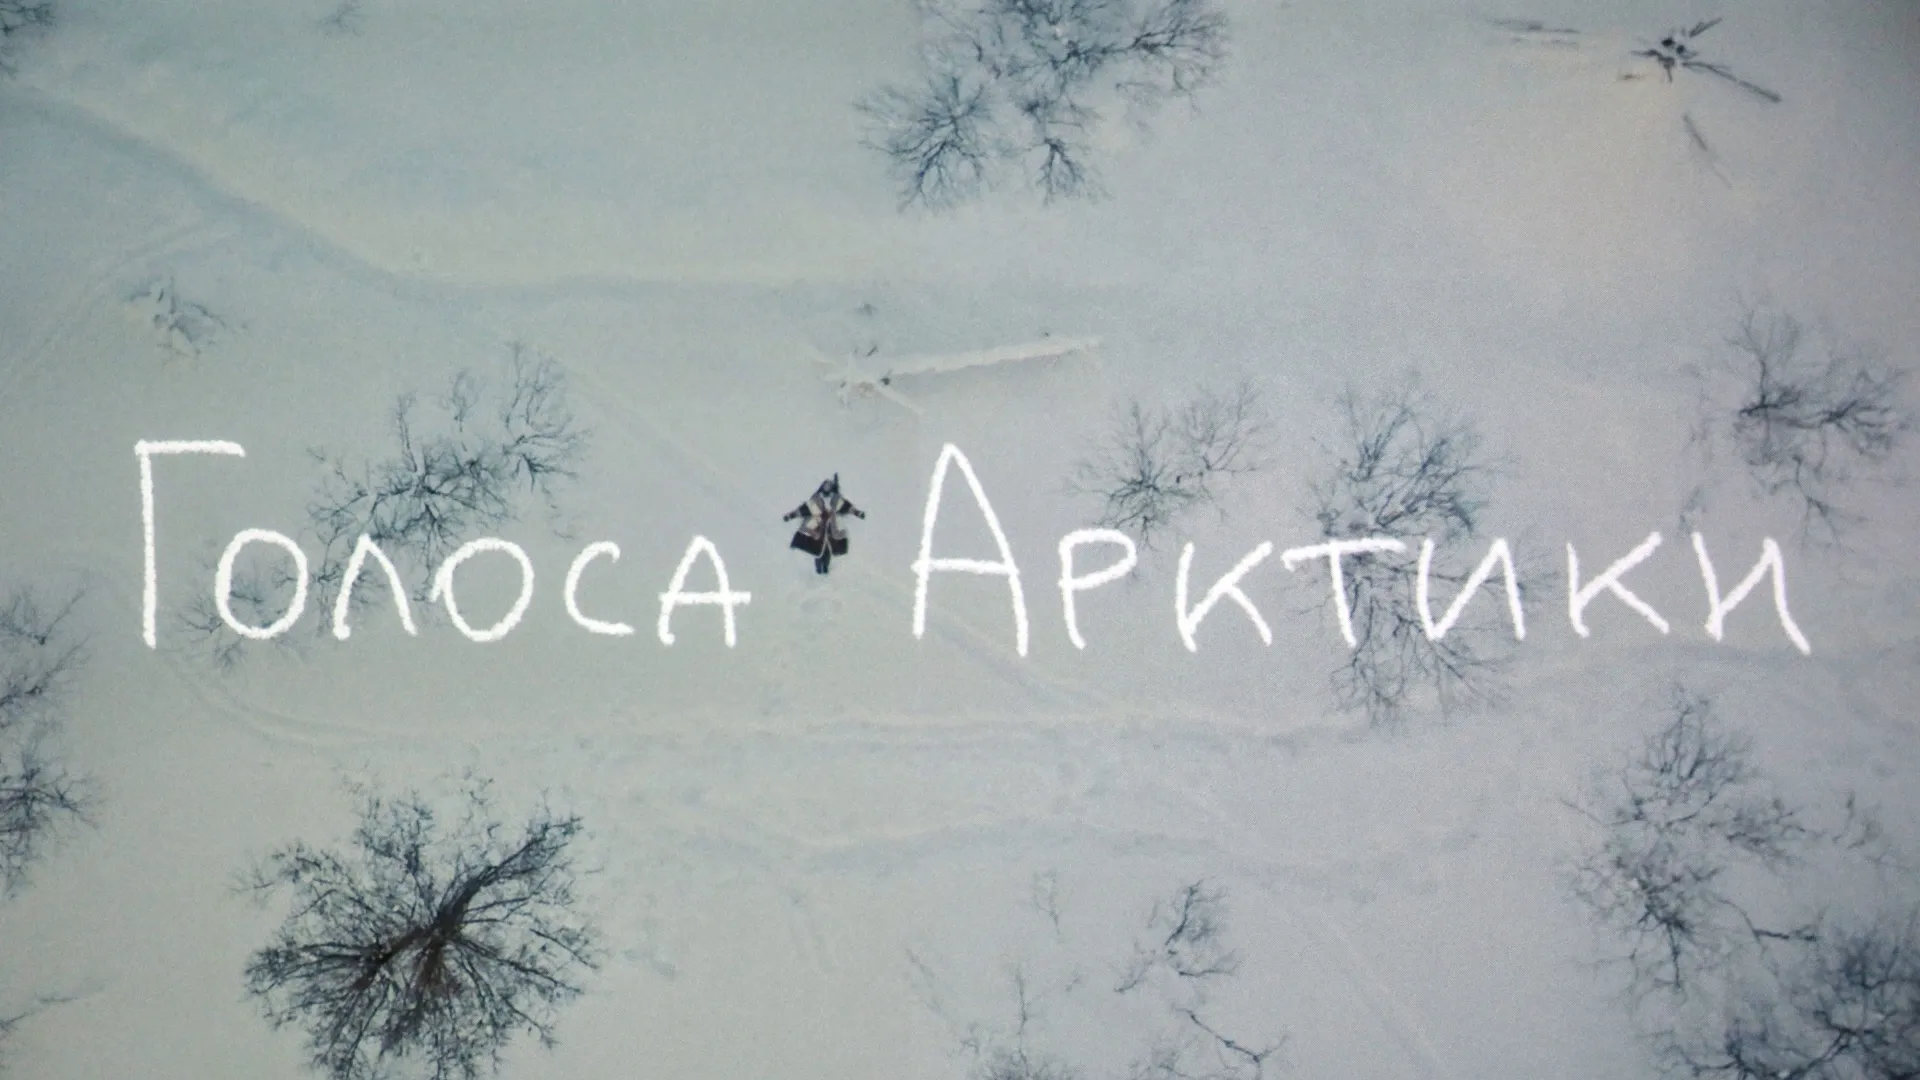 Документальный фильм снимали в трёх арктических регионах, в том числе и на Ямале. Фото: пресс-служба губернатора ЯНАО